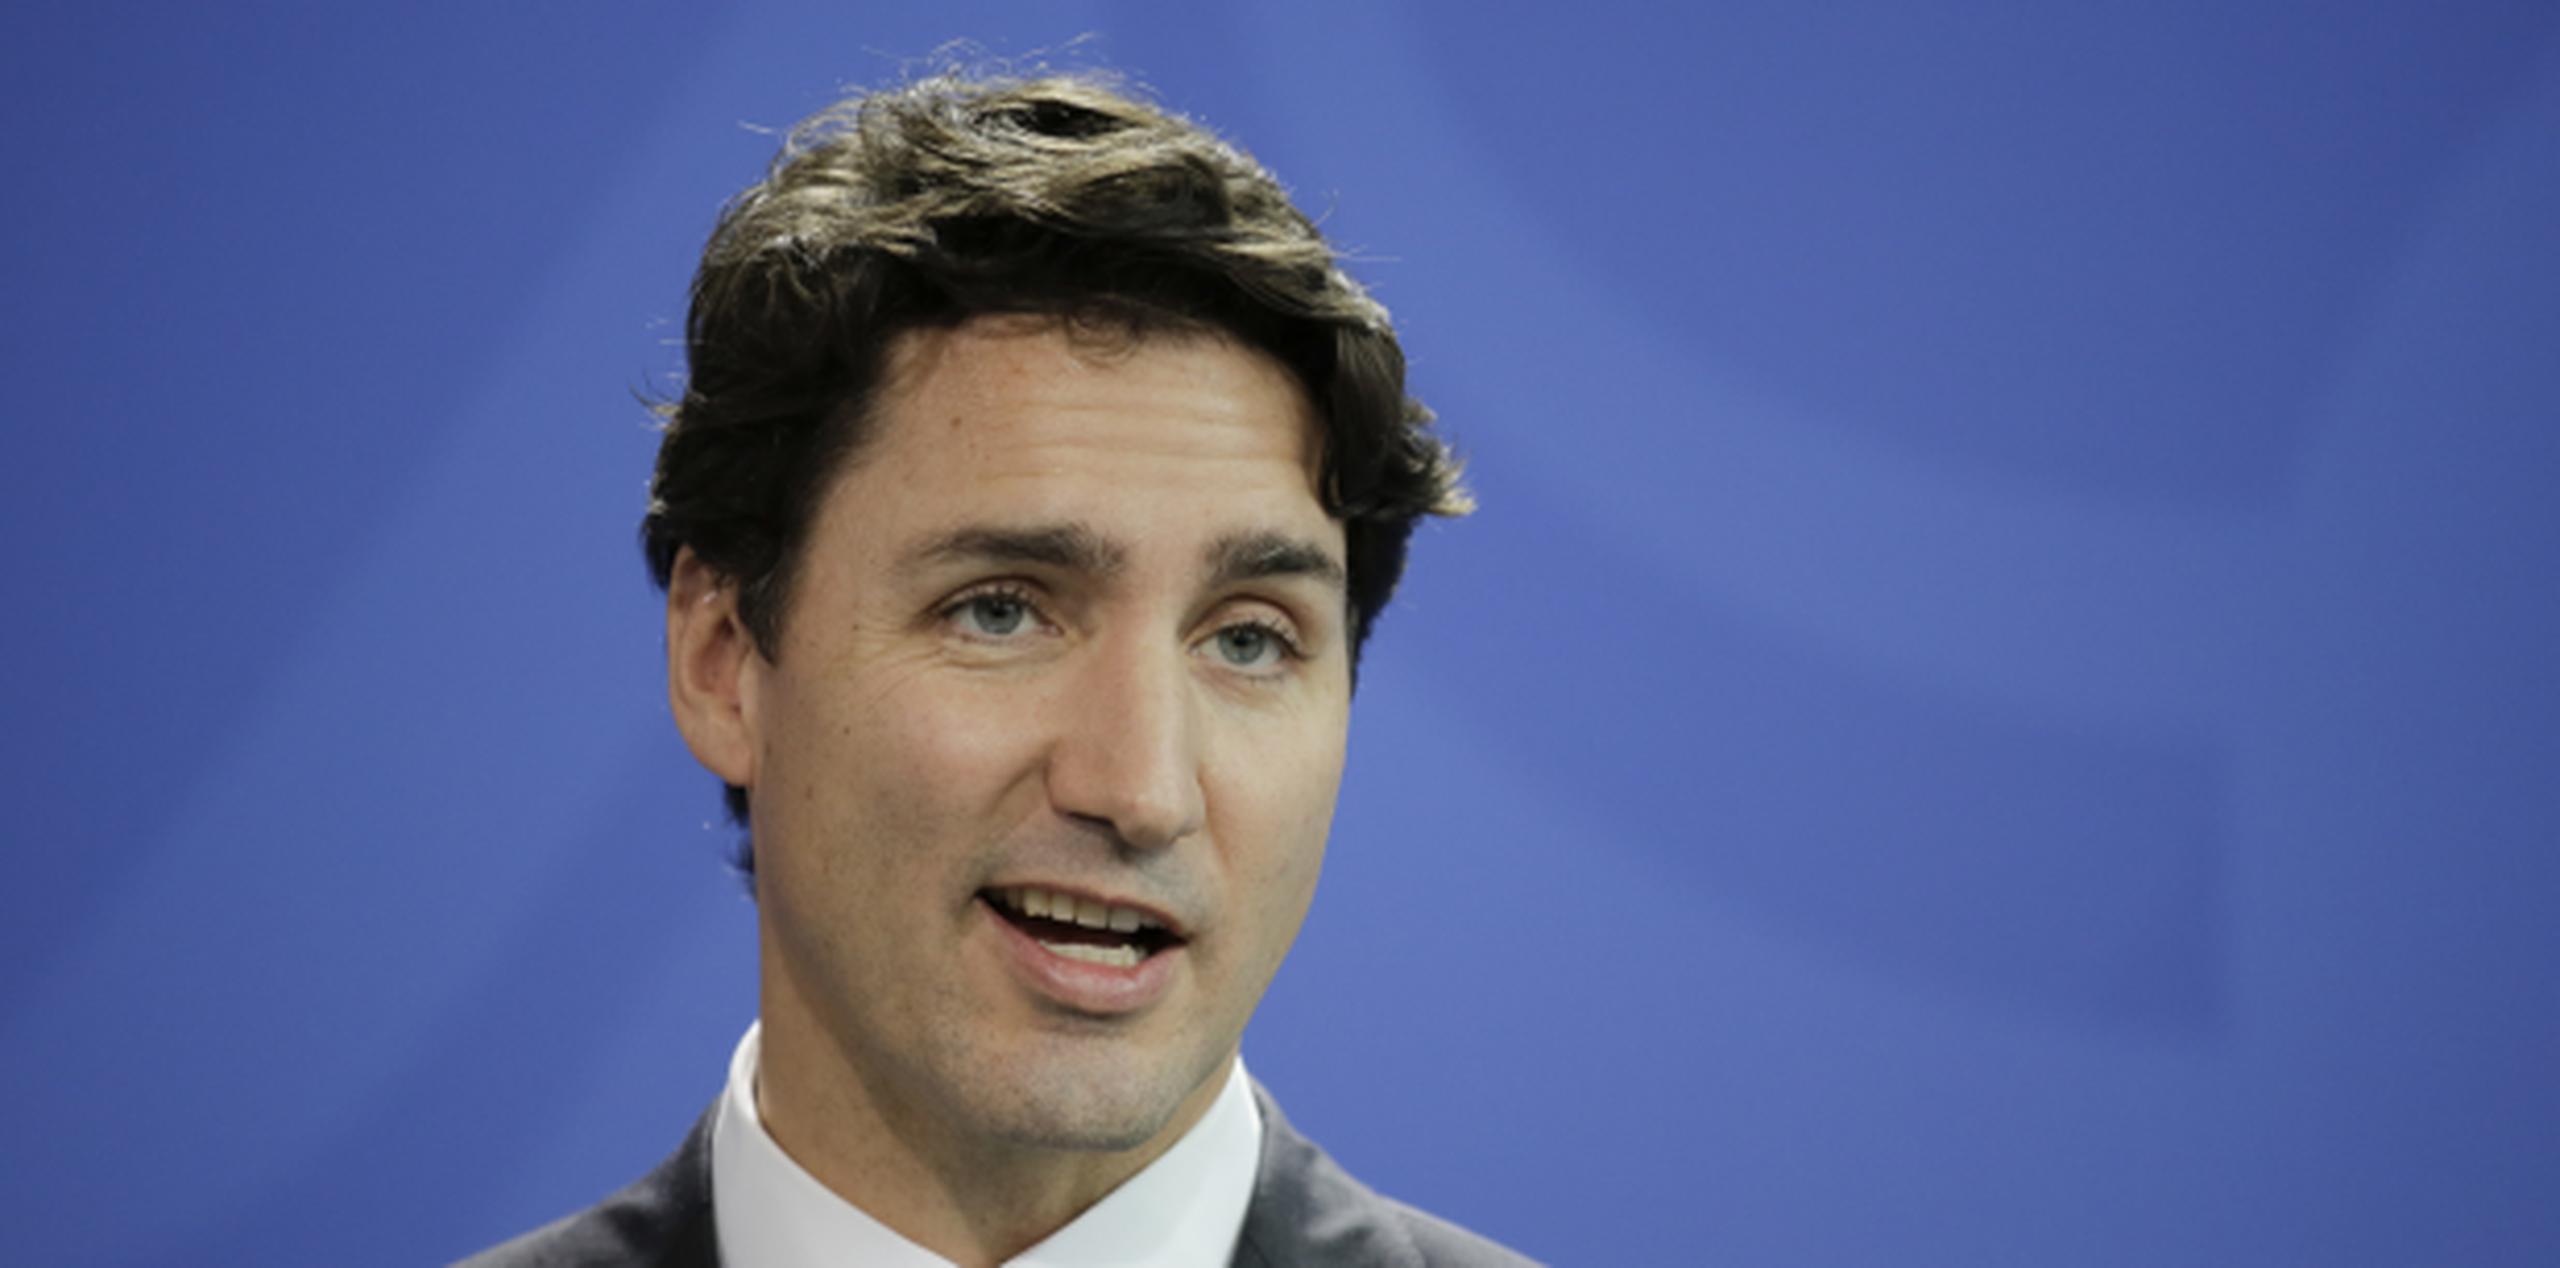 Justin Trudeau tiene 45 años. (AP / Markus Schreiber)